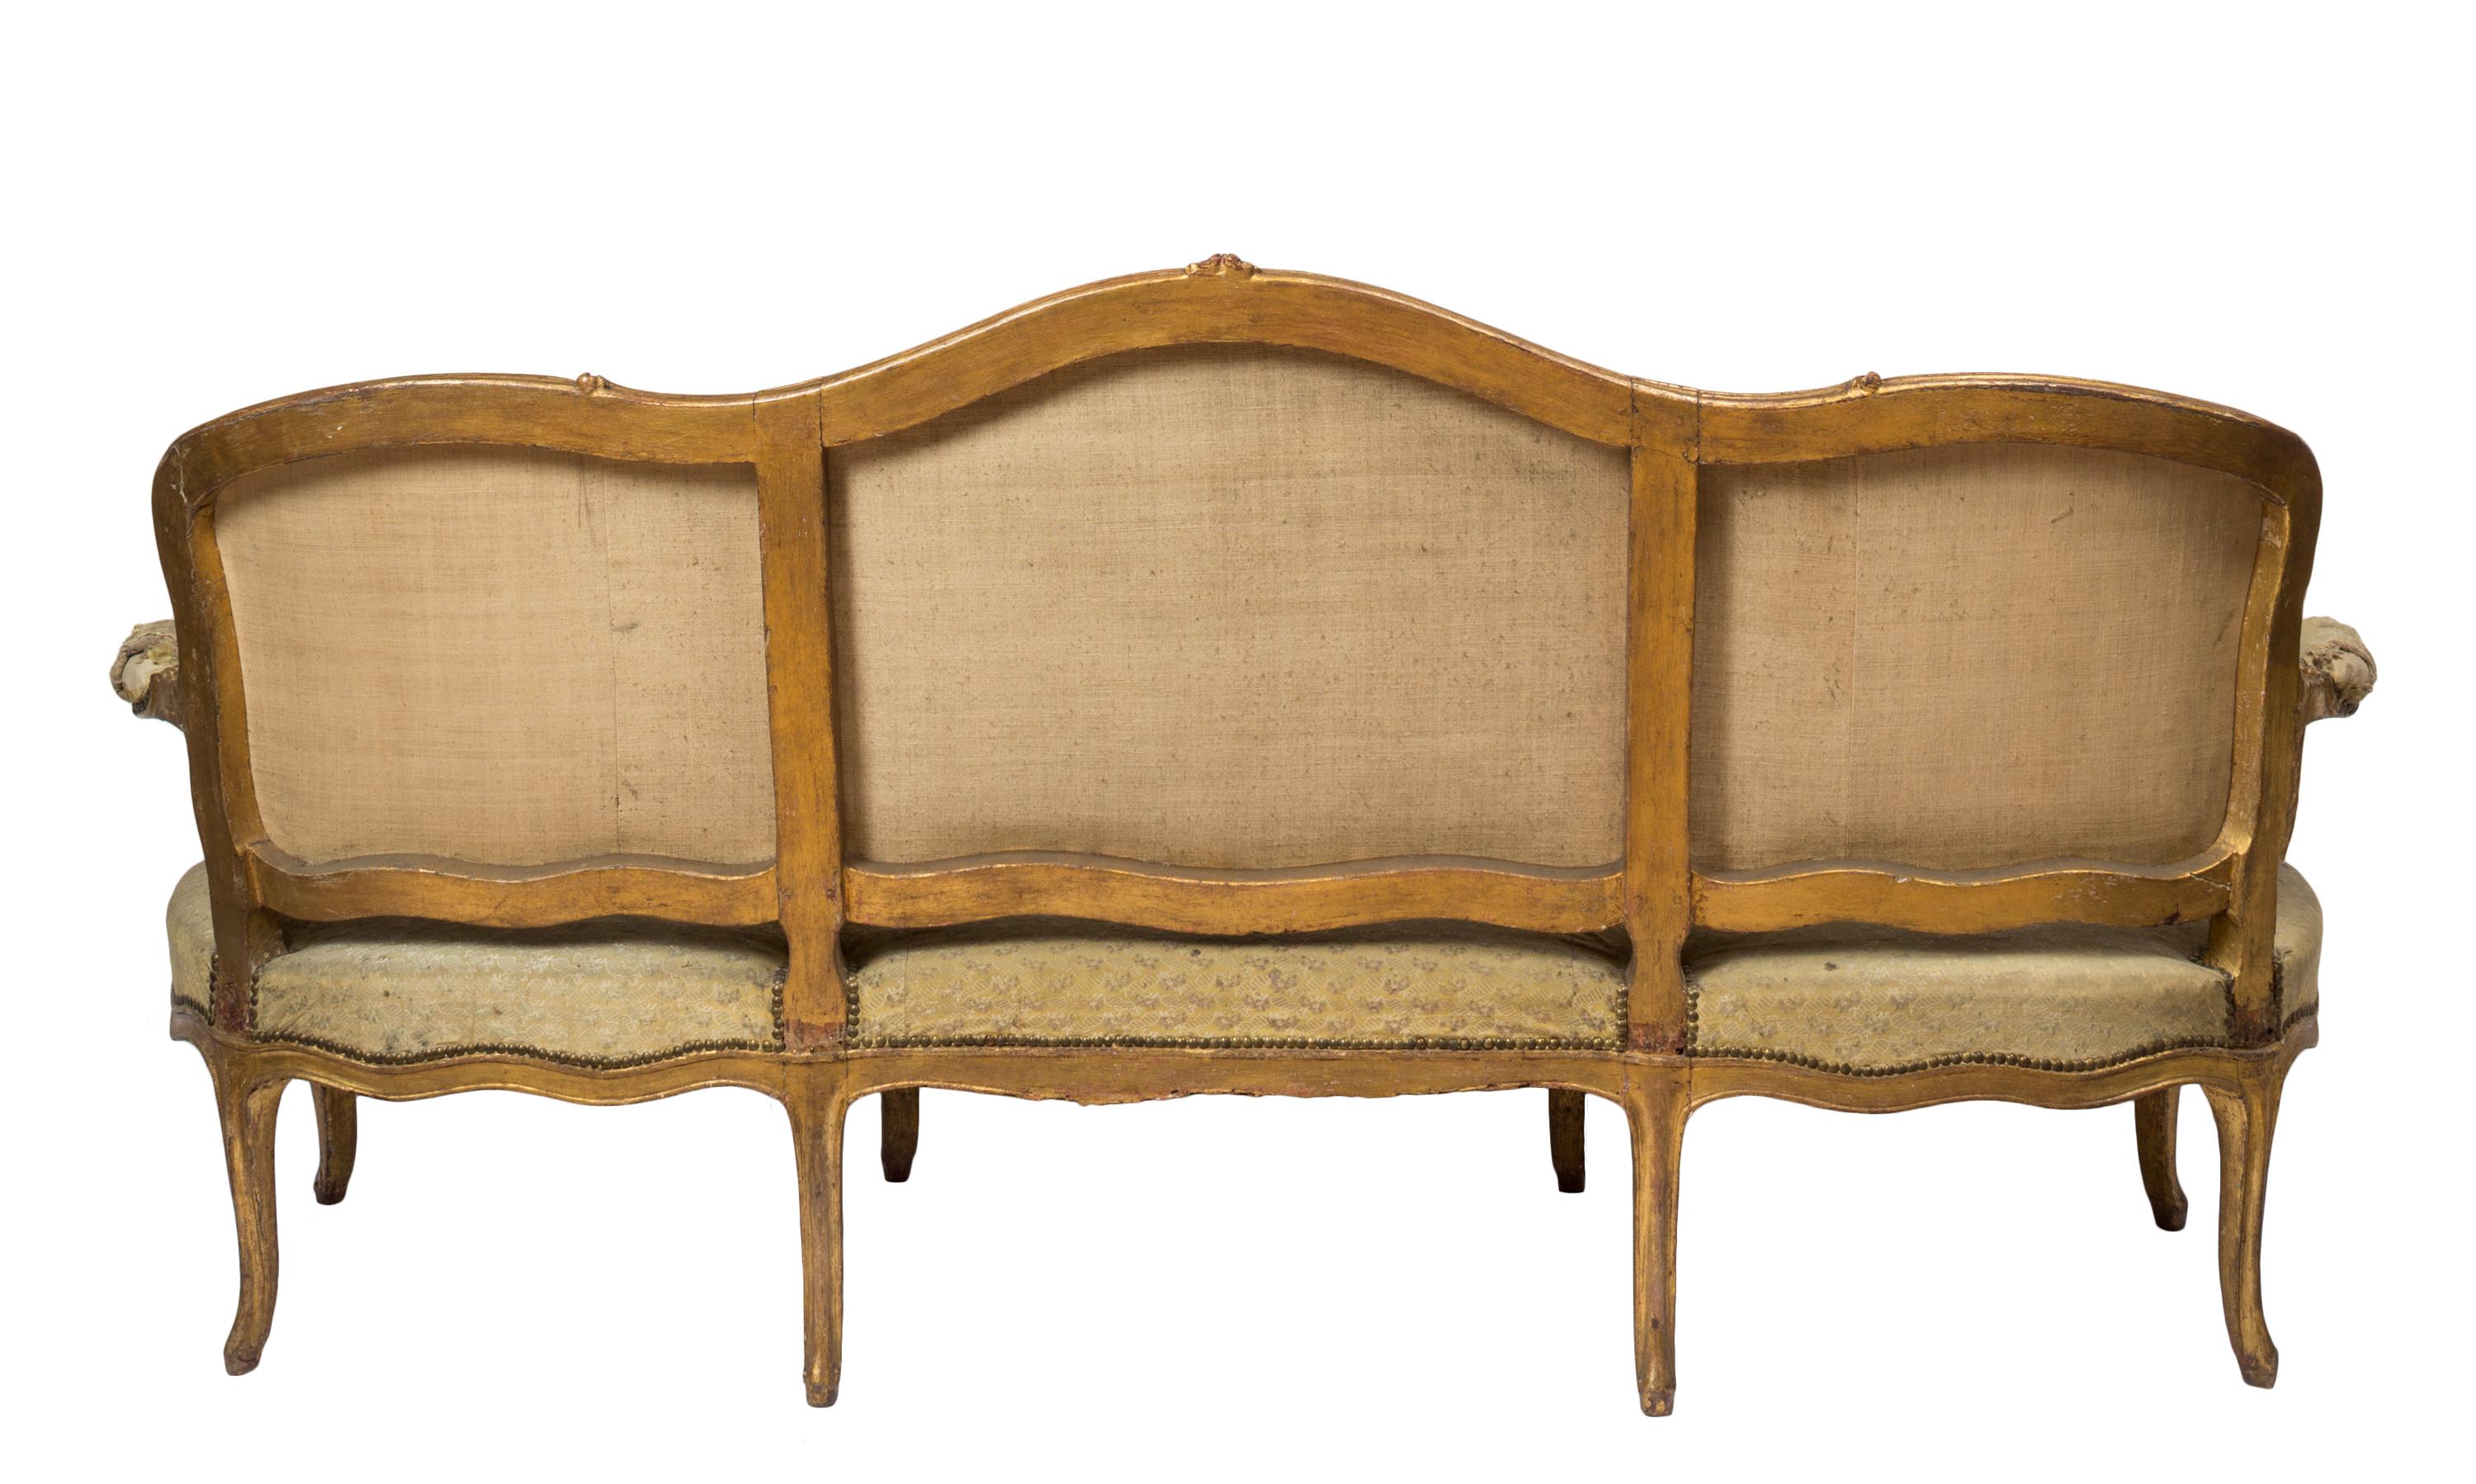 Dreiteilige Garnitur, spätes 18. Jahrhundert, französisches Kanapee/Sofa/Sitzgruppe im Stil Louis XV mit zwei passenden Sesseln. Das Sofa bietet Platz für drei Personen. Einzigartig und bemerkenswert ist, dass alle drei Teile dieser Garnitur mit